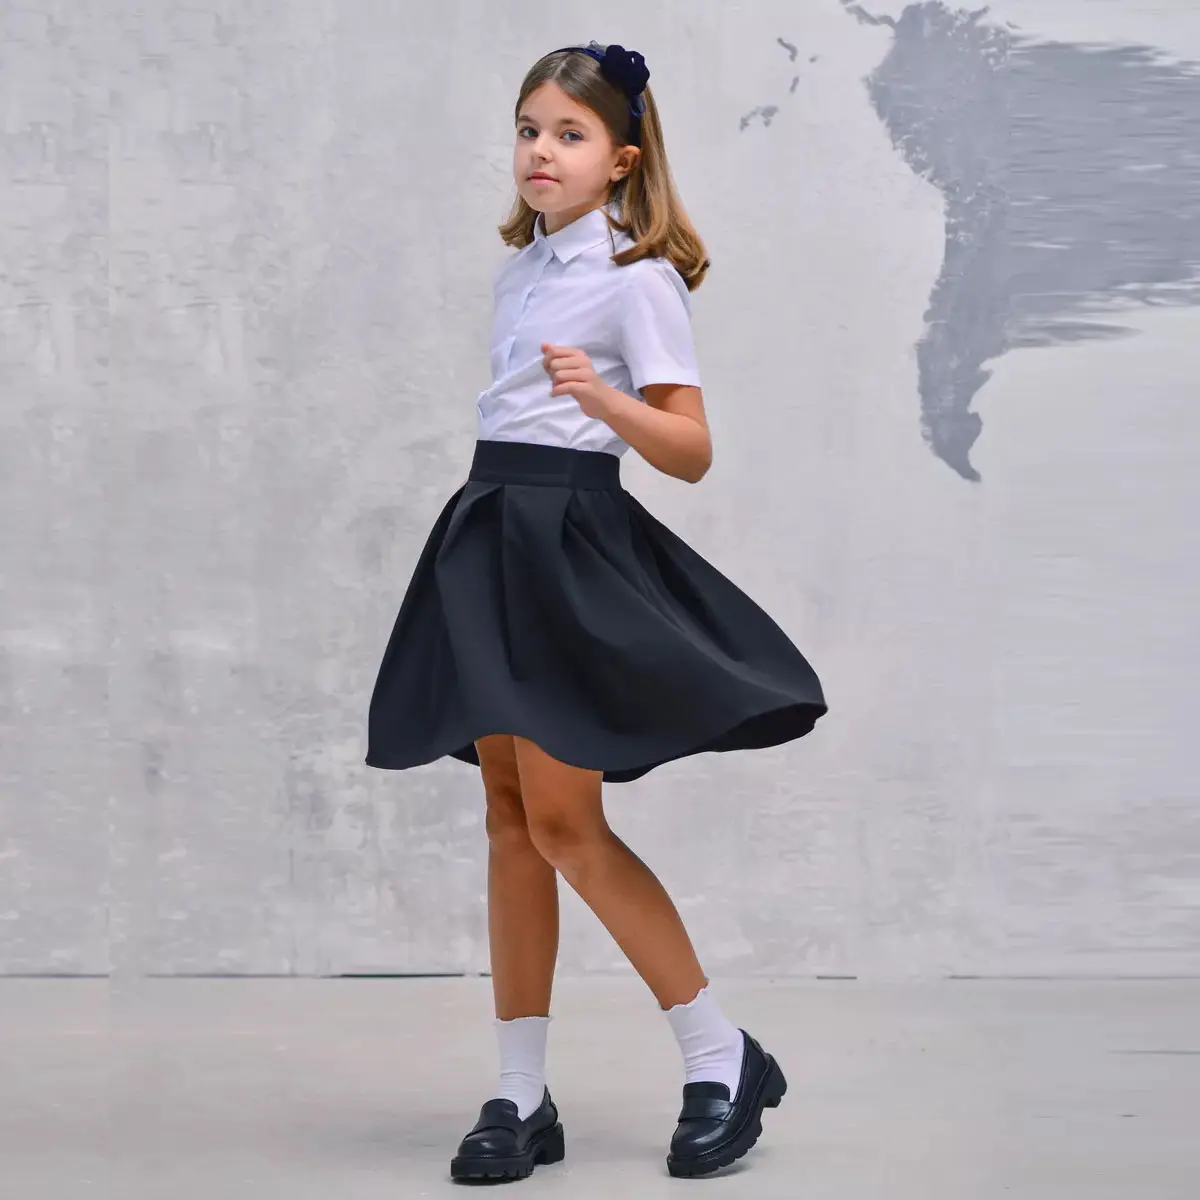 カスタムバッジアクセサリー女の子のための制服セット学校のシャツ白い制服スカート衣装学生教師